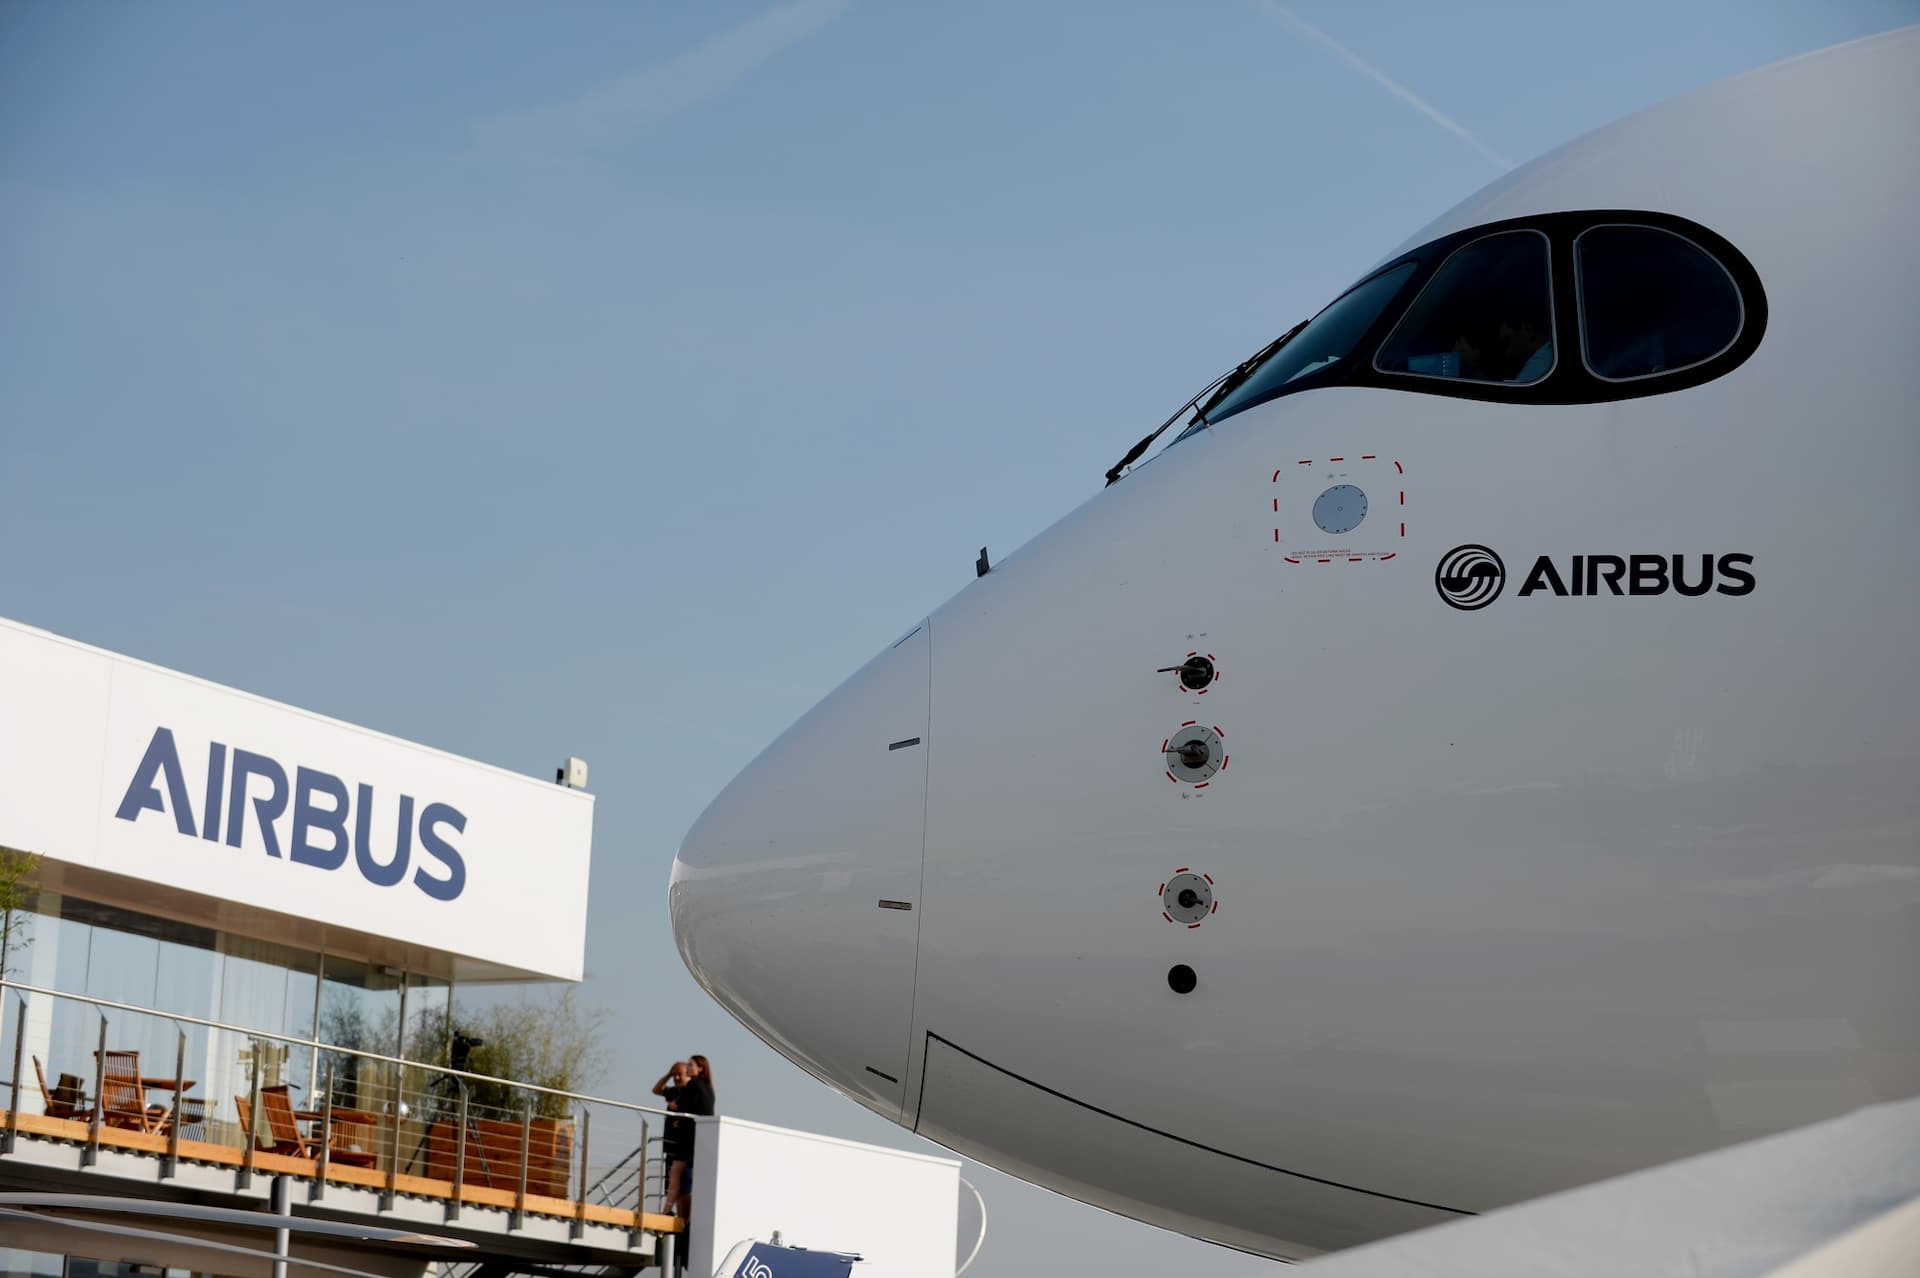 Airbus bổ sung đợt chia cổ tức đặc biệt